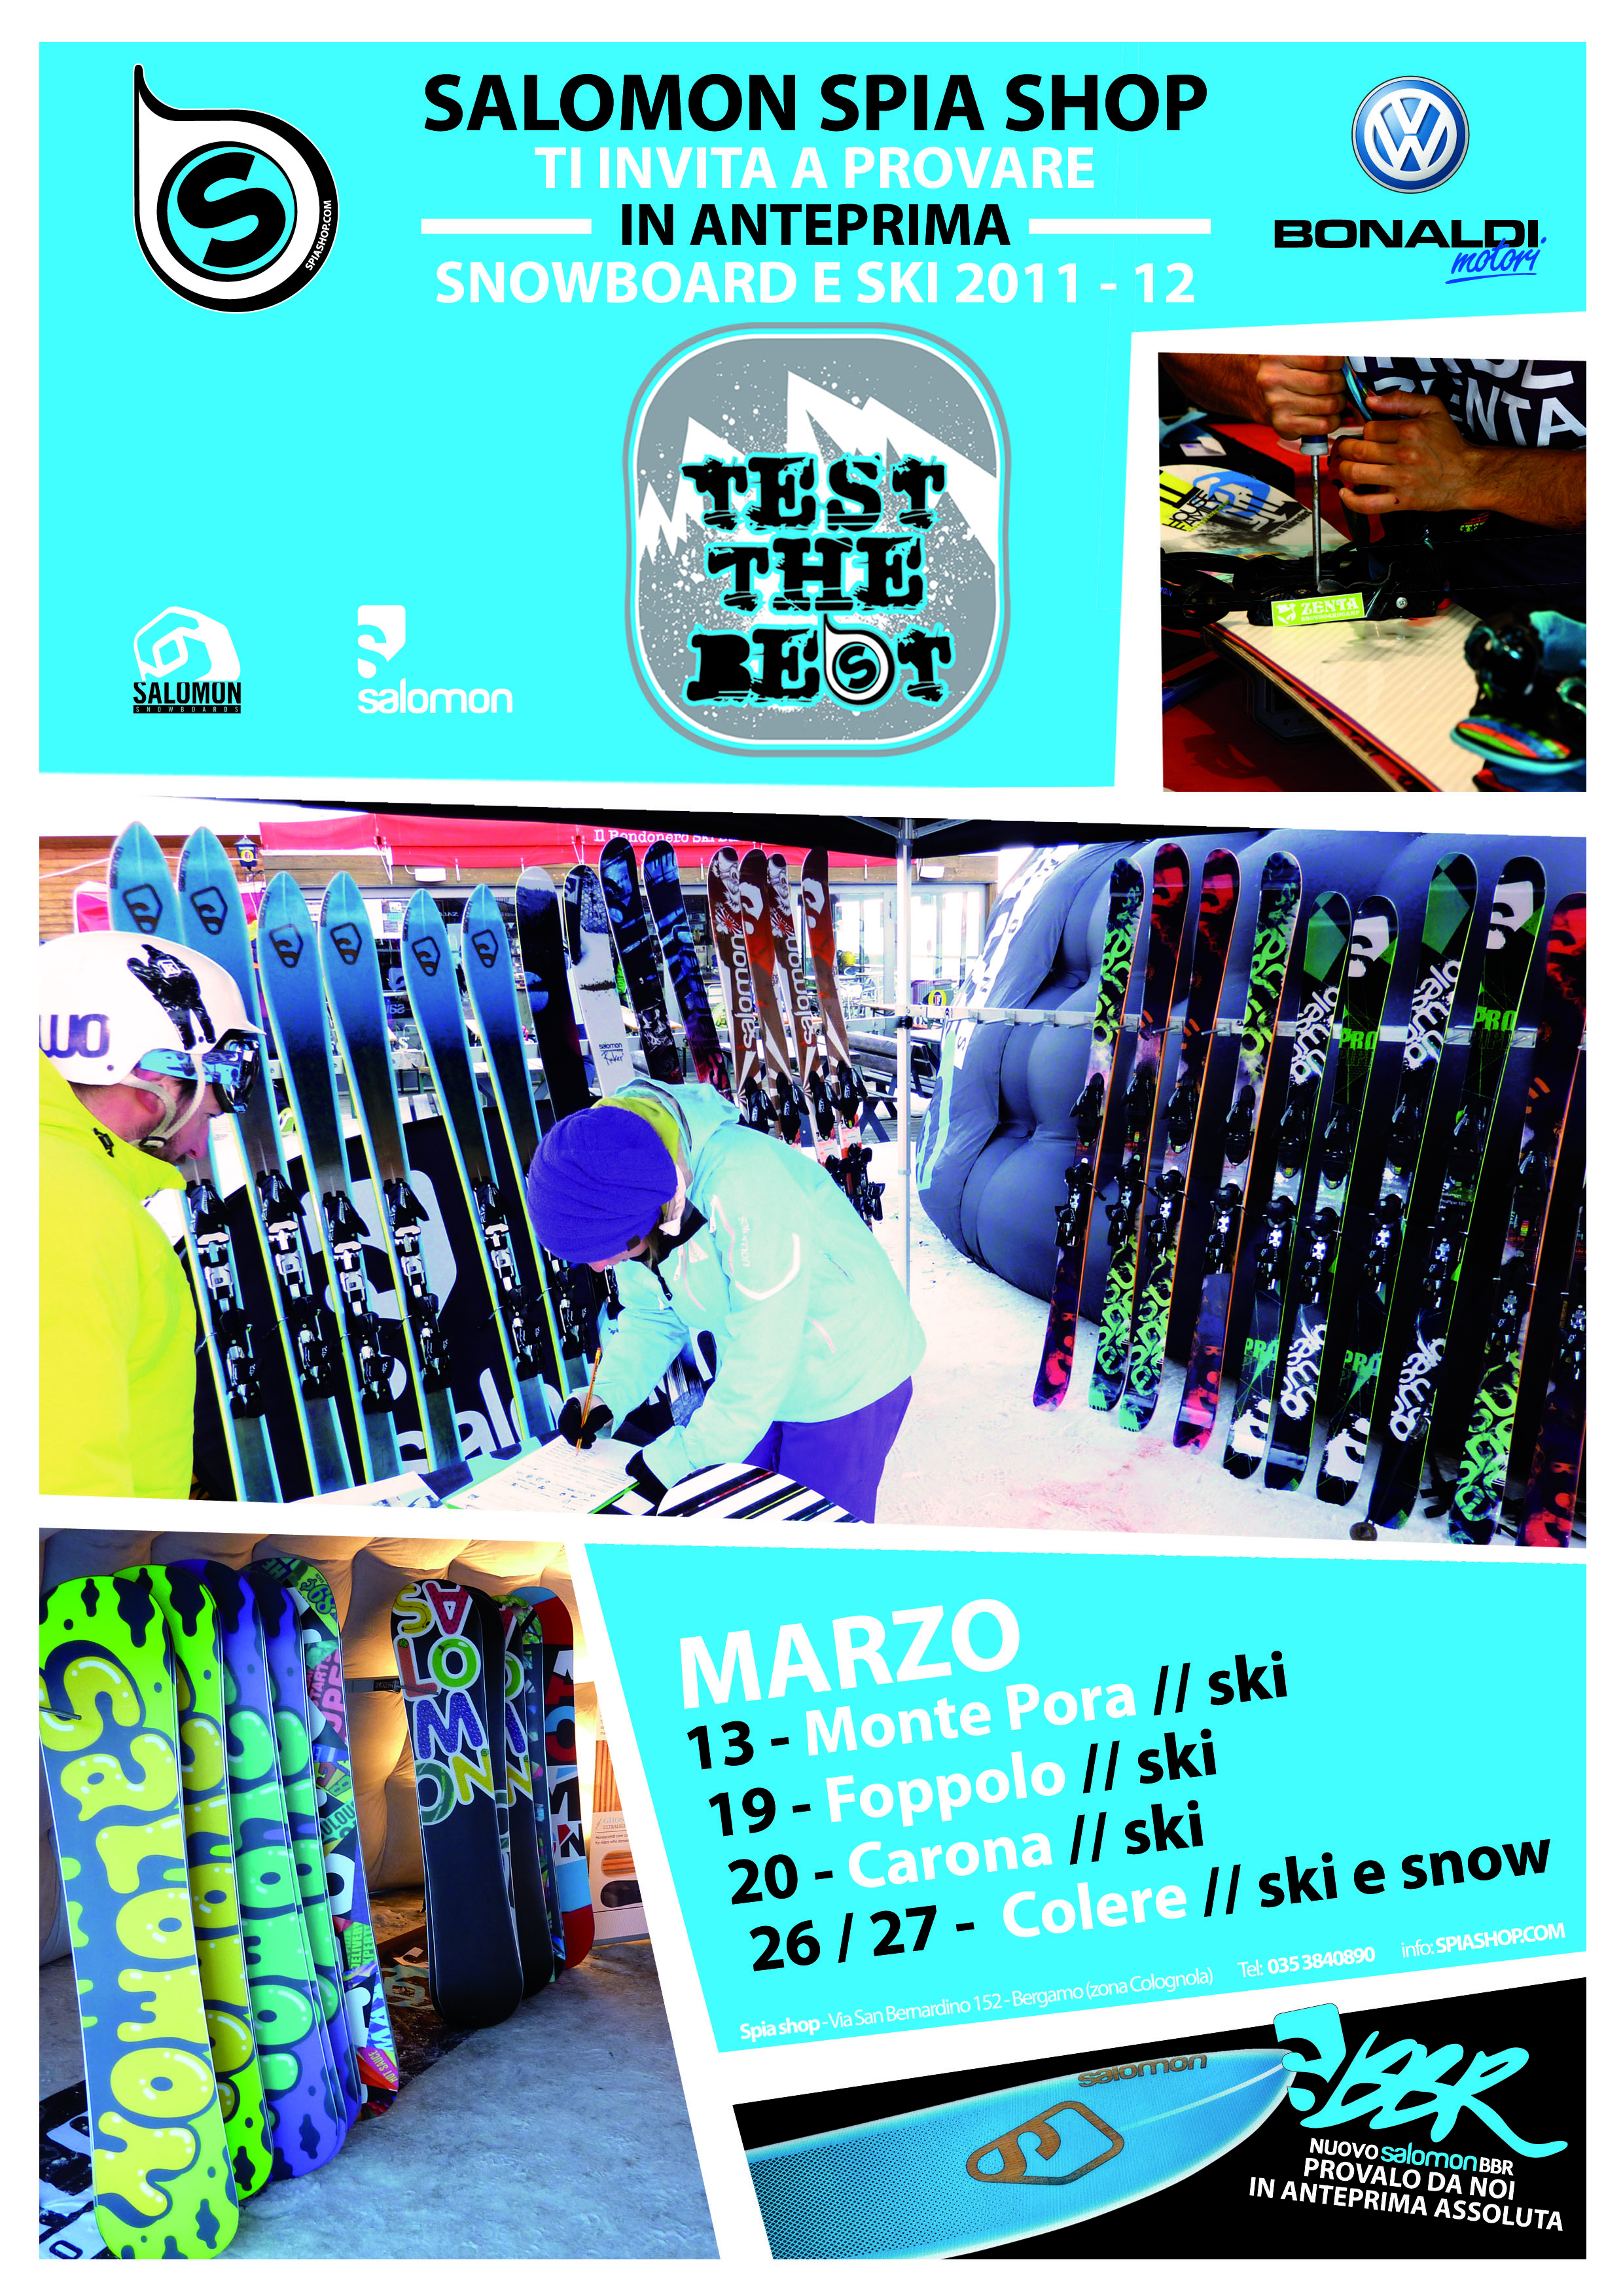 Salomon Spia Shop propone test di sci e snowboard 2011/2012